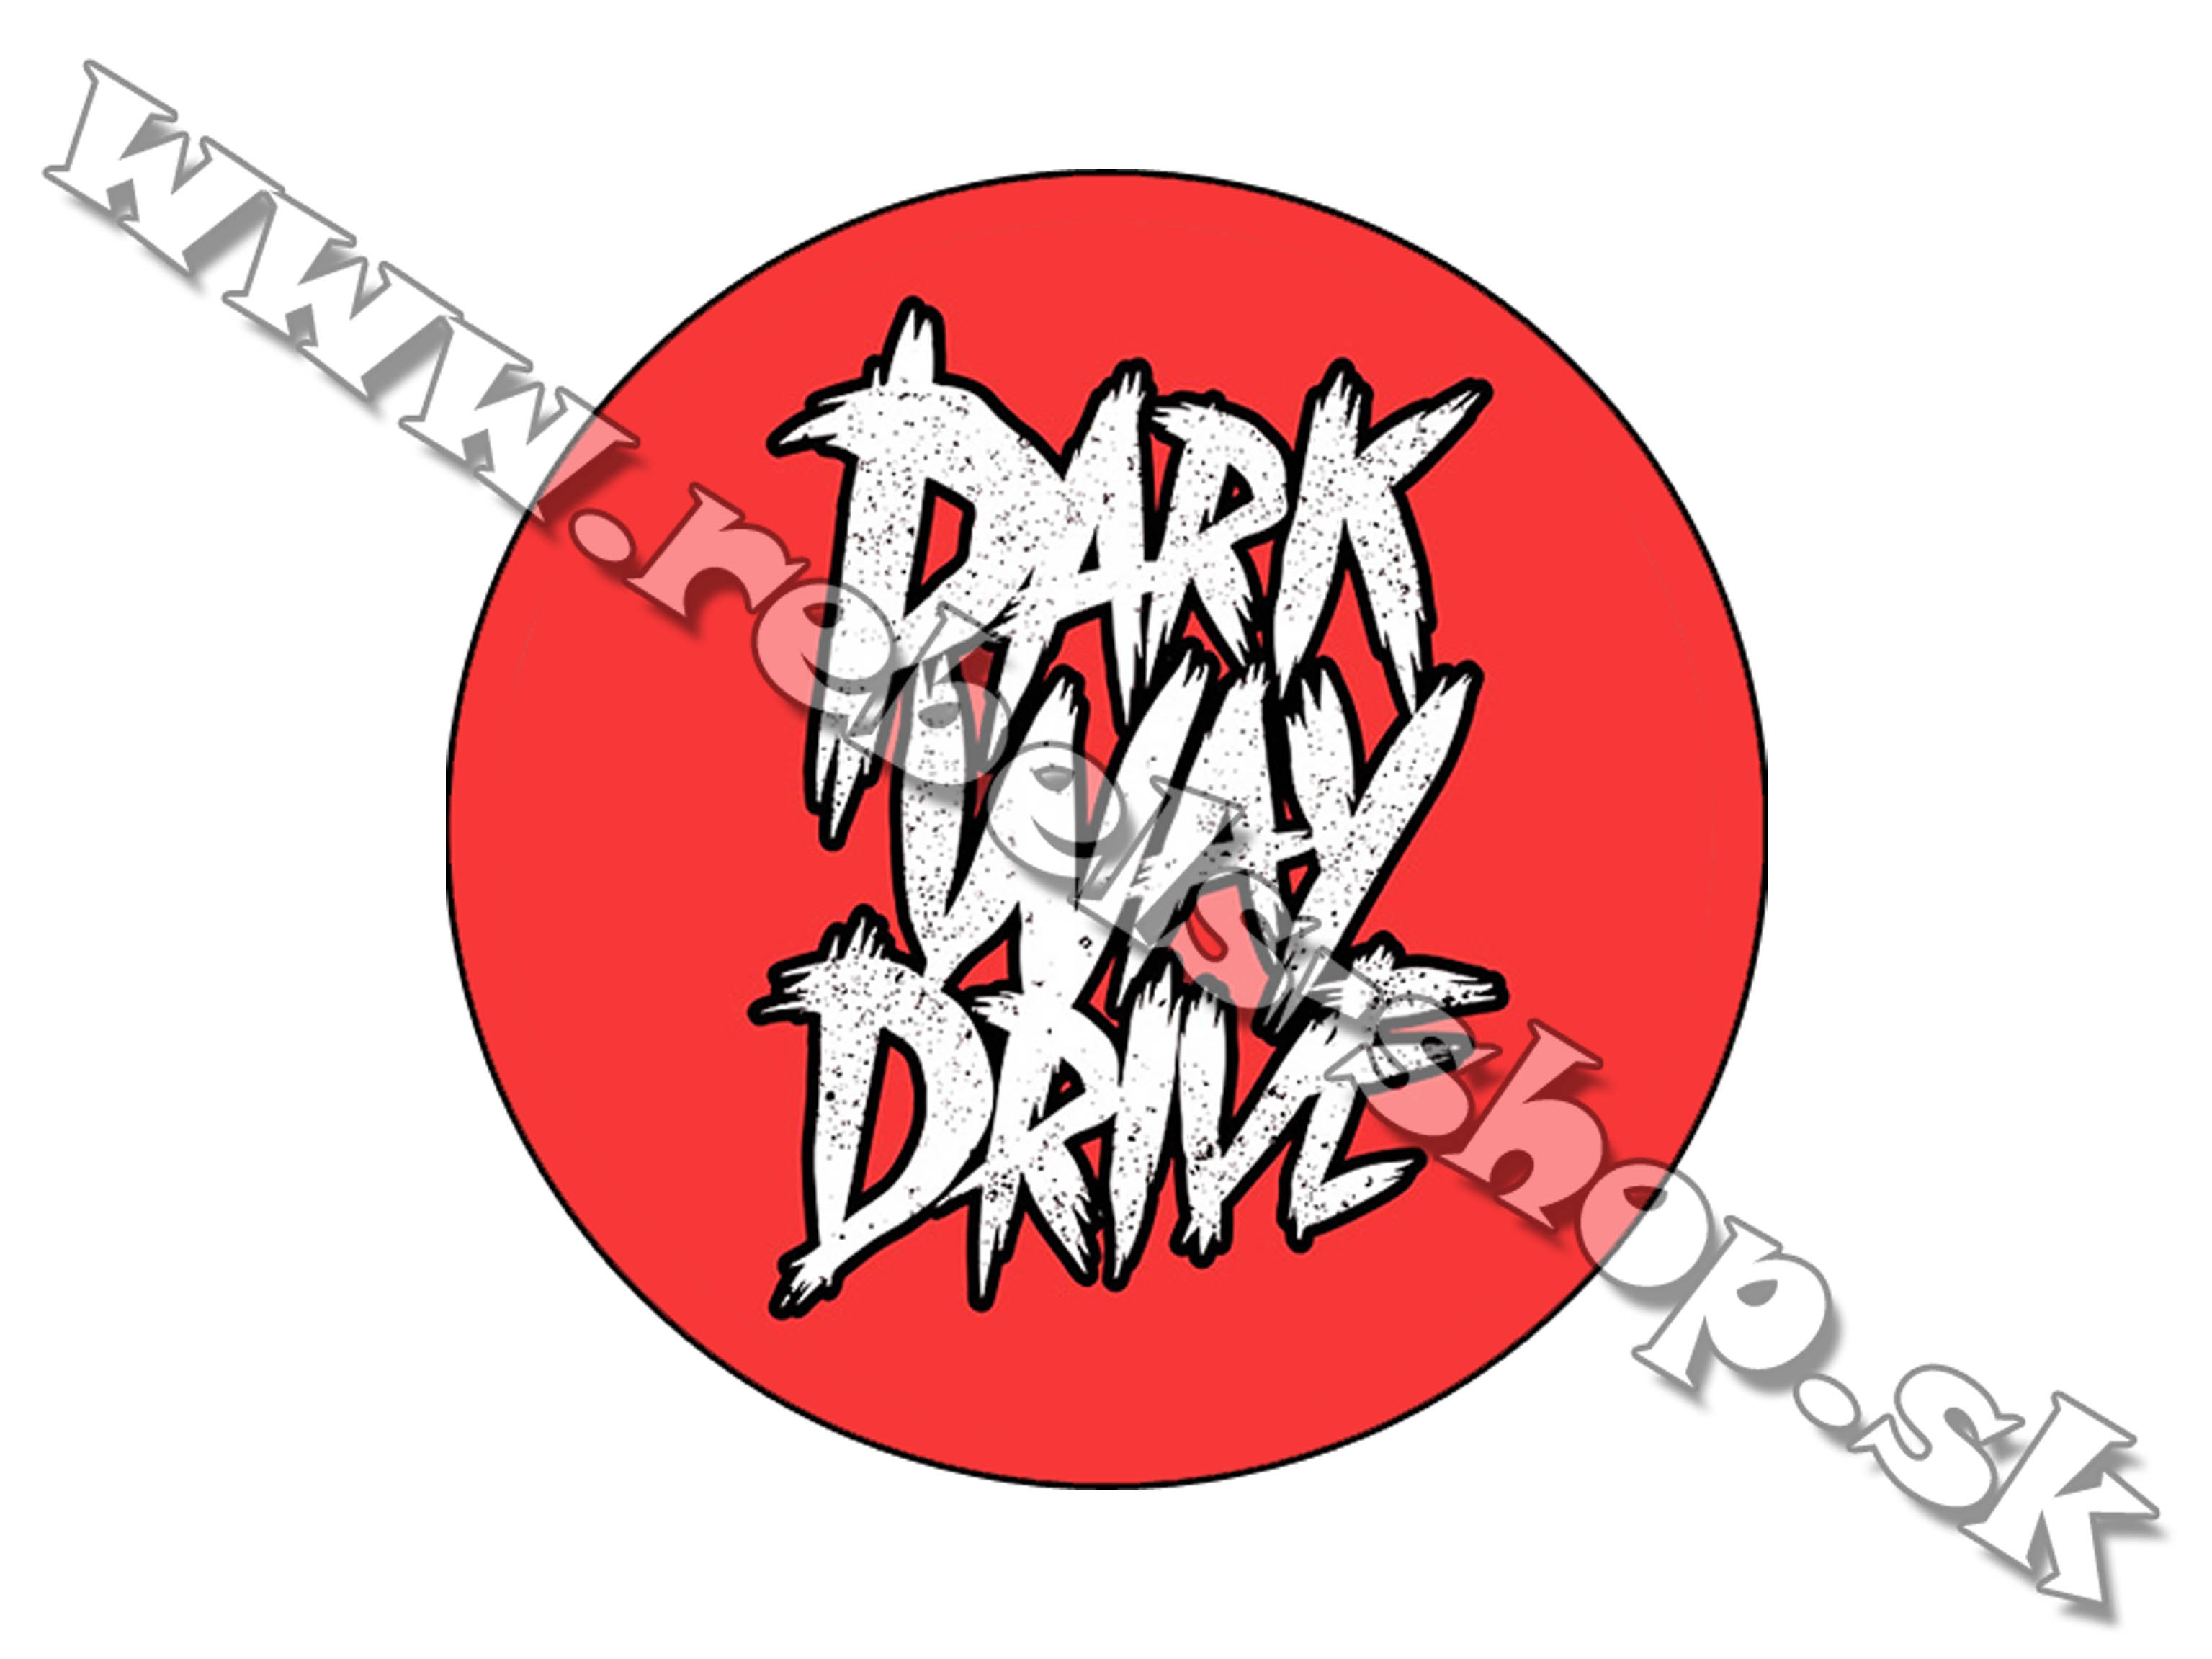 Odznak "Parkway Drive"